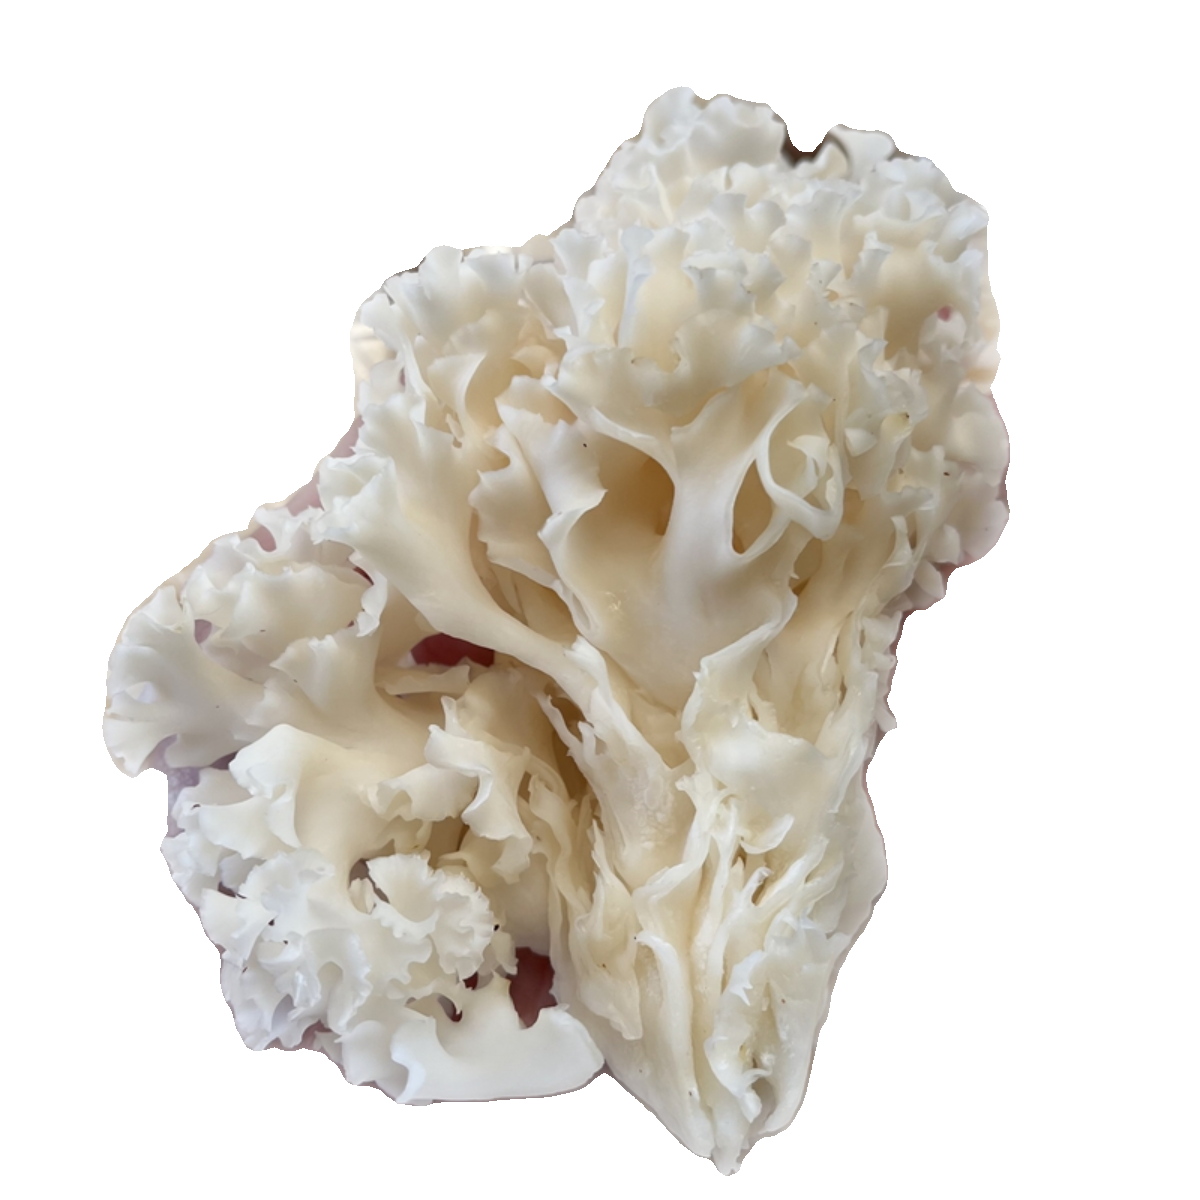 新鲜绣球菌食用菌菇 顺丰空运包邮2斤凉拌煲汤火锅口感脆爽食材 - 图3